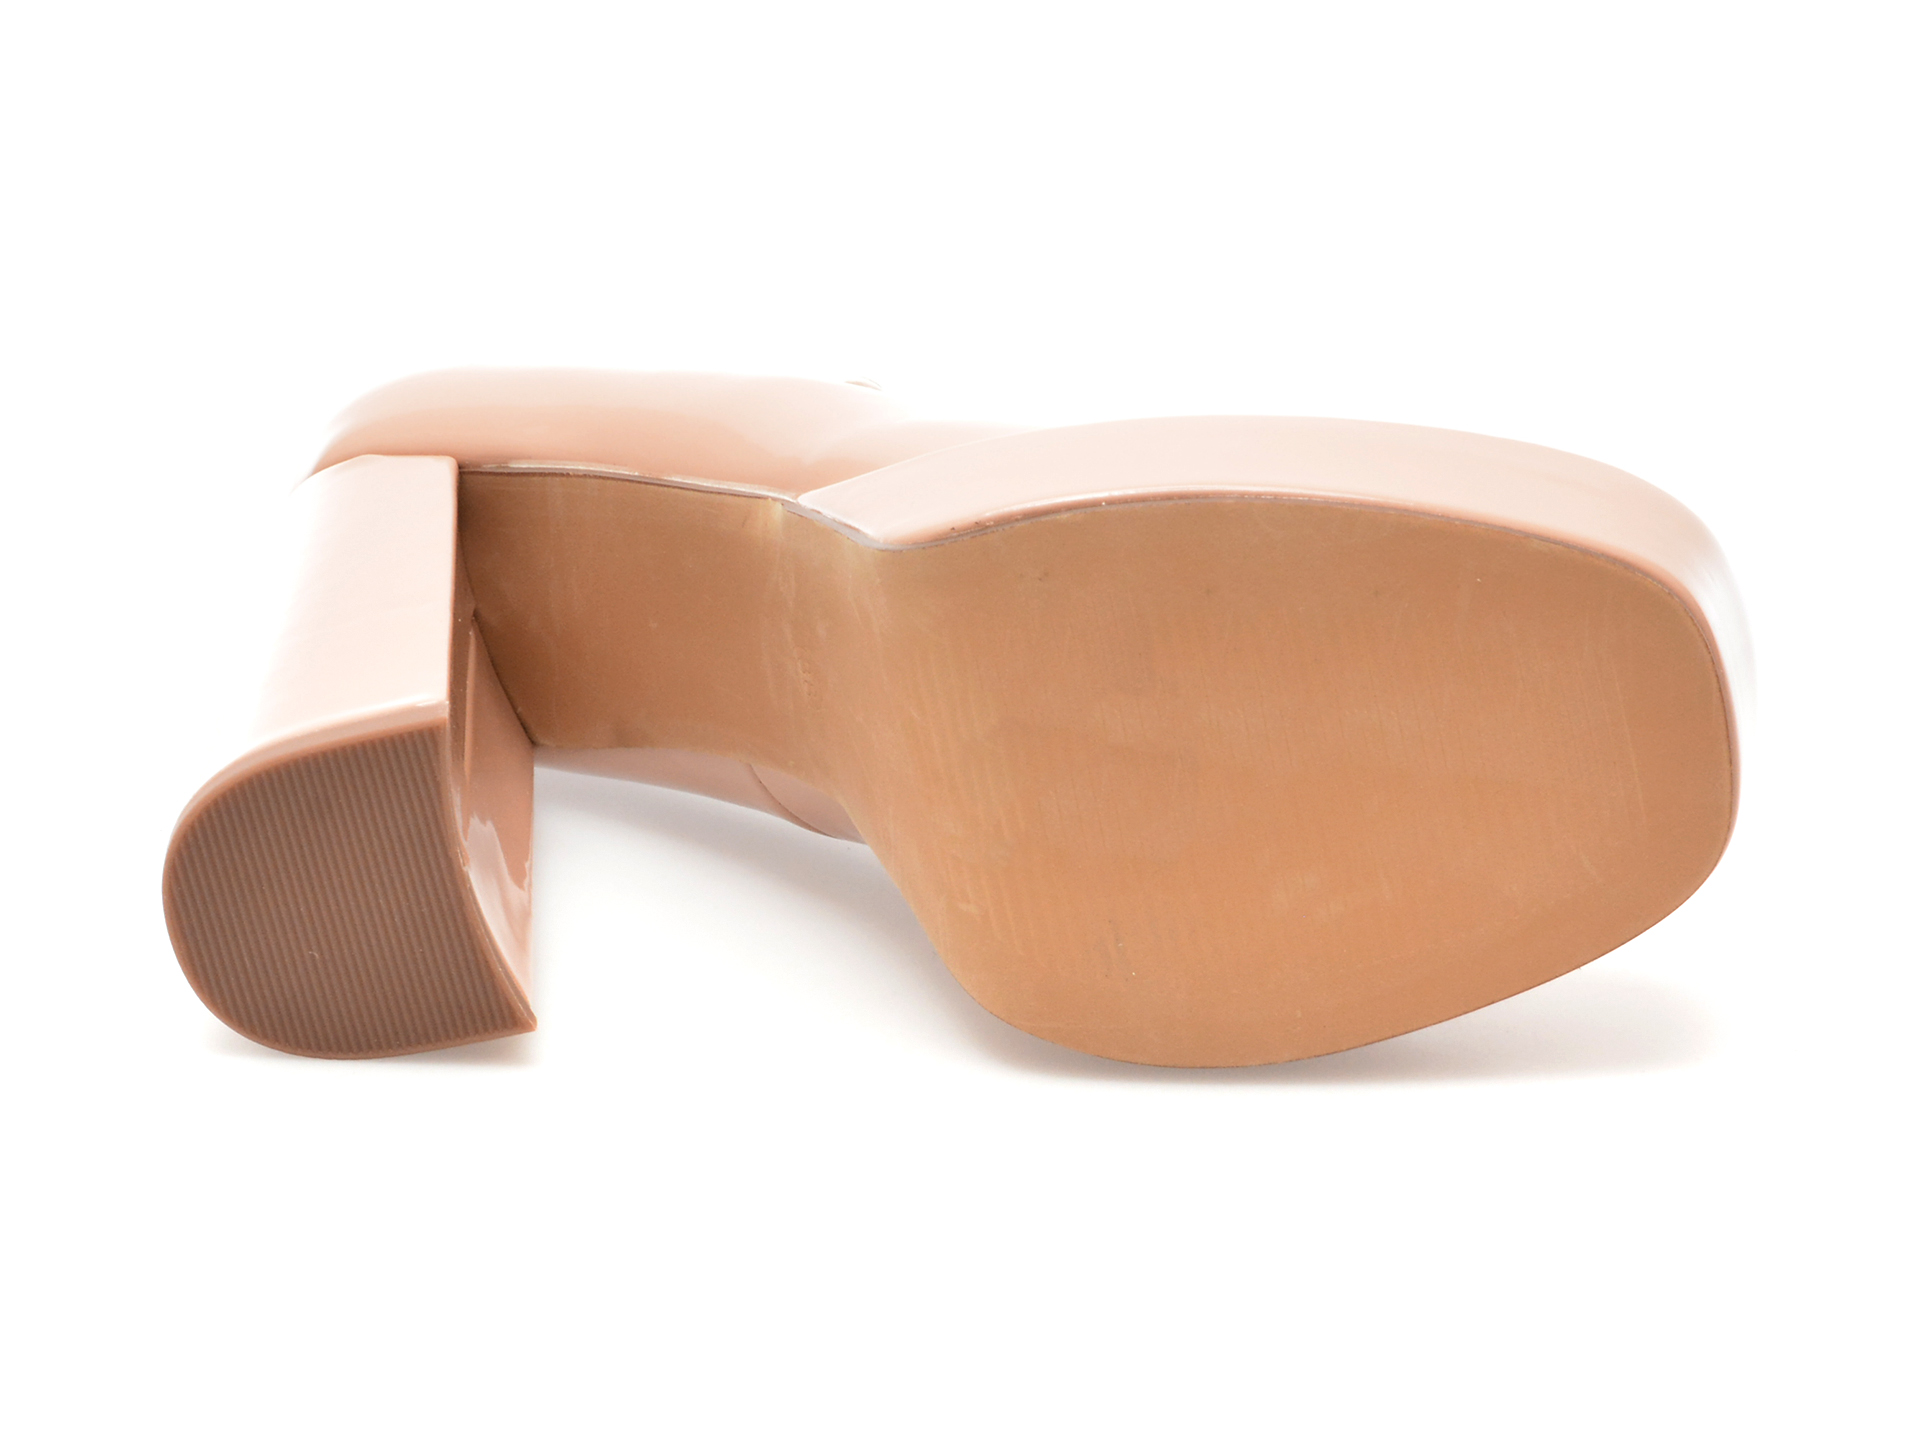 Pantofi EPICA nude, R100, din piele ecologica